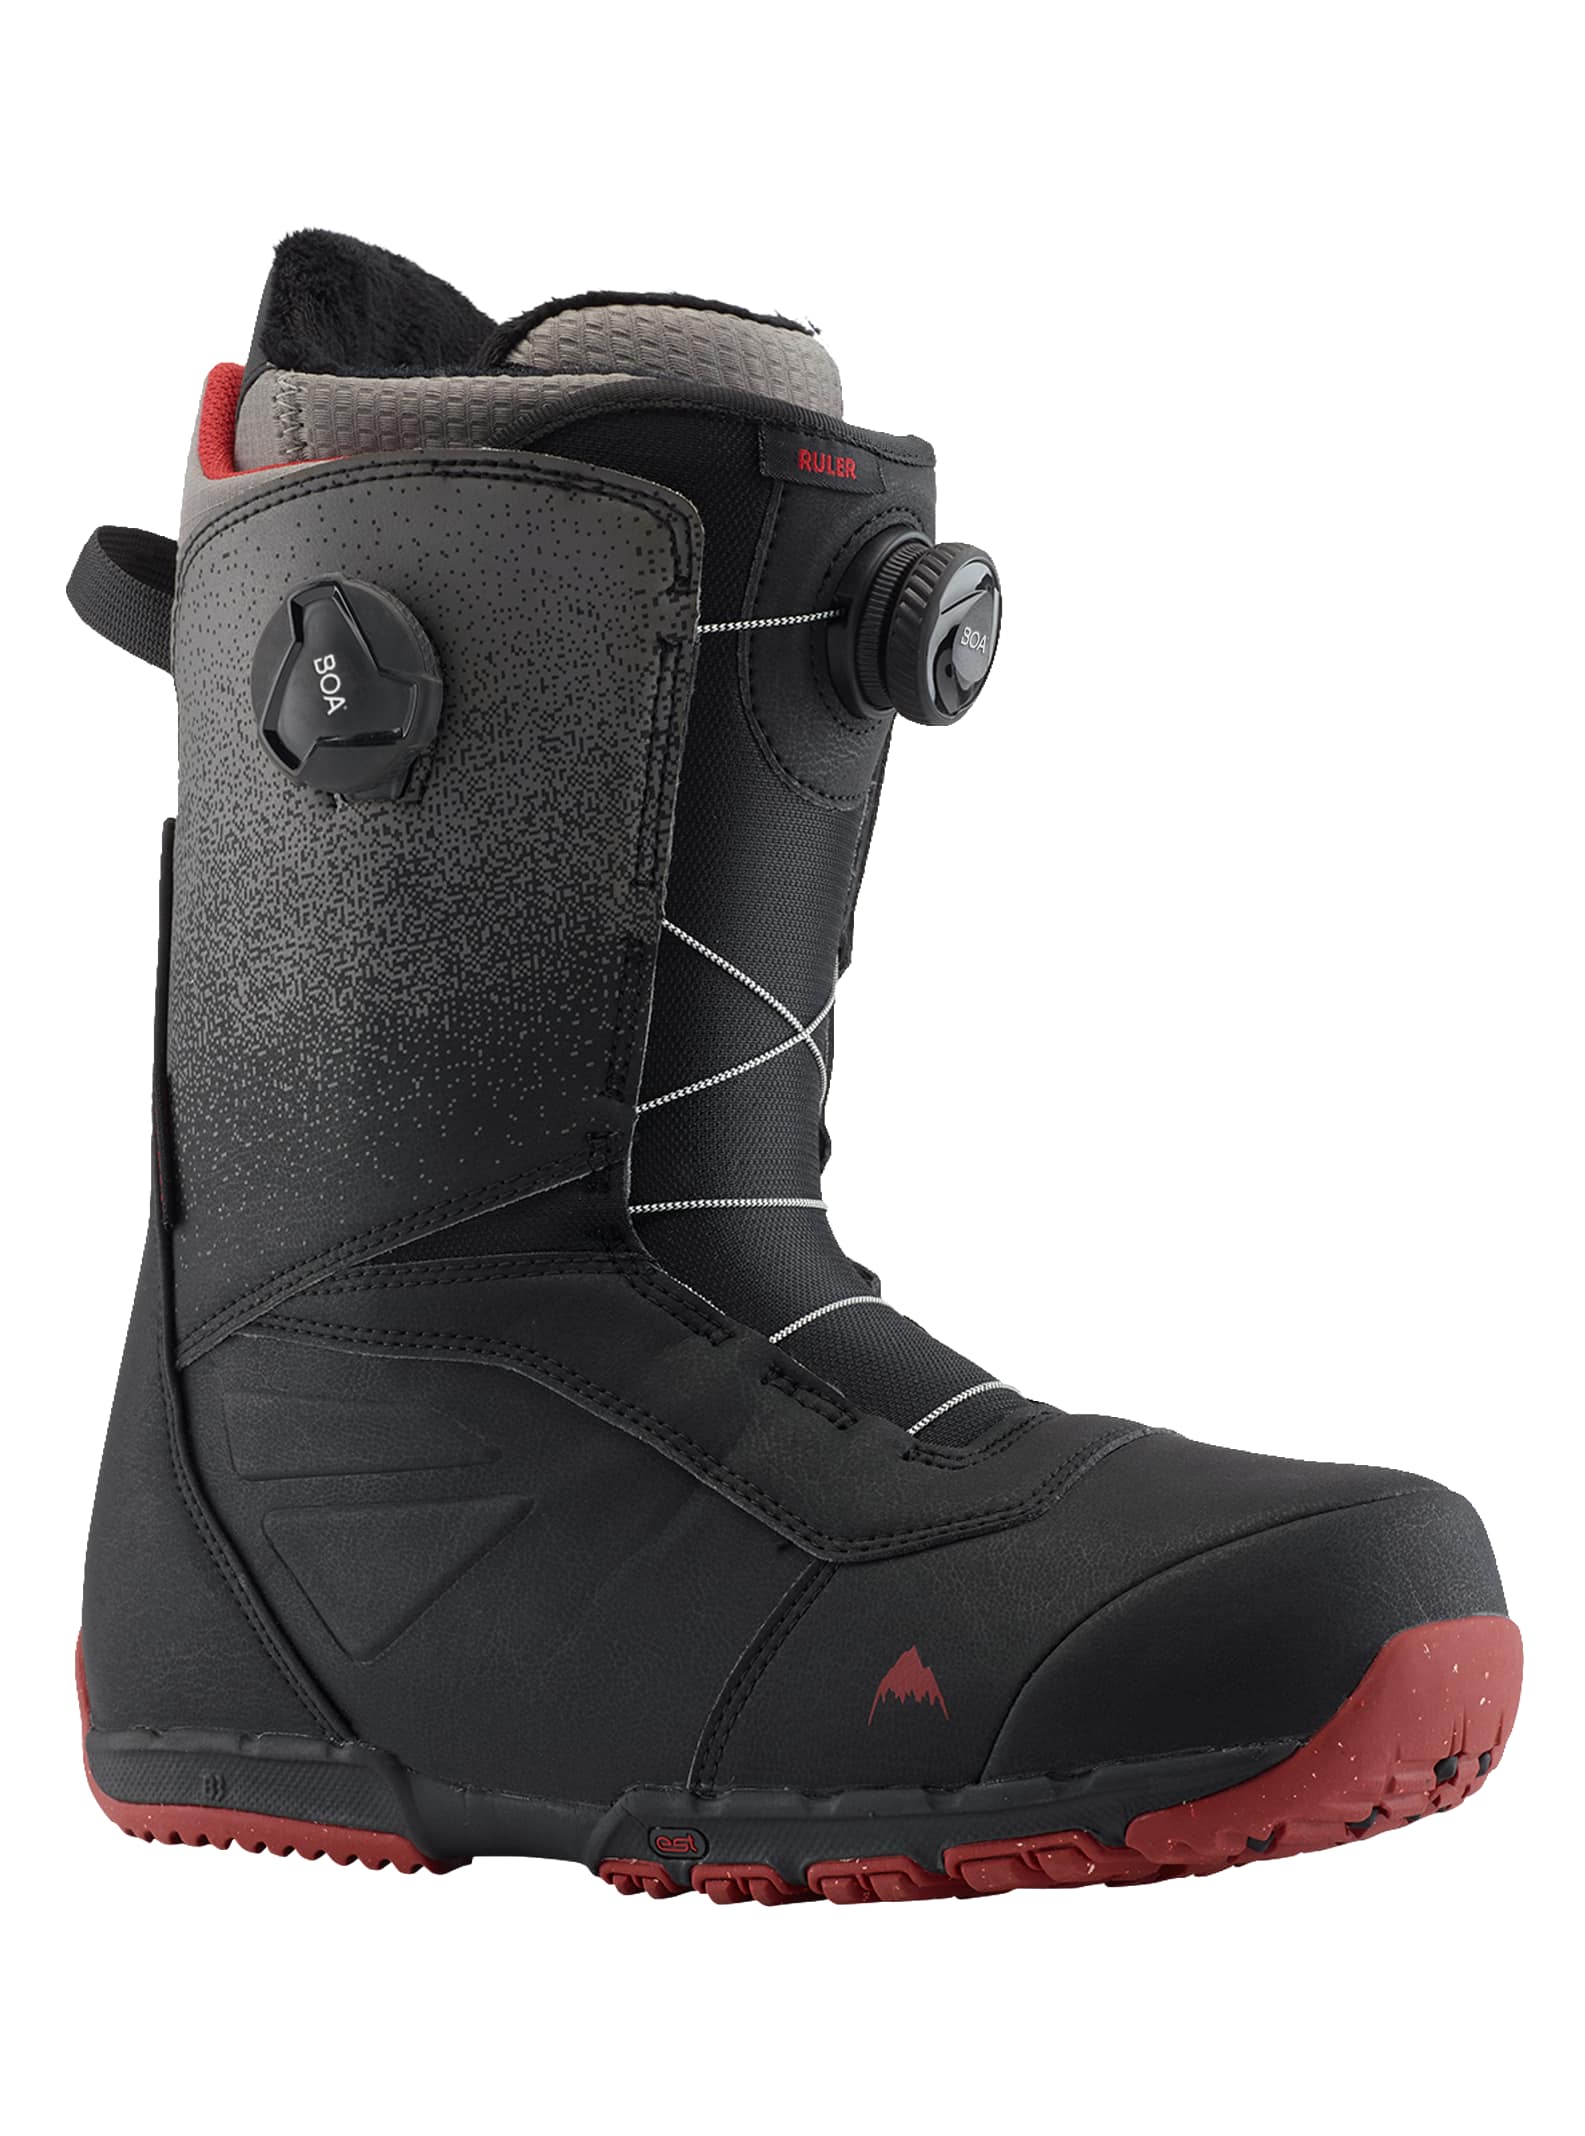 Burton - Boots de snowboard Ruler Boa® homme, Black Fade, 105